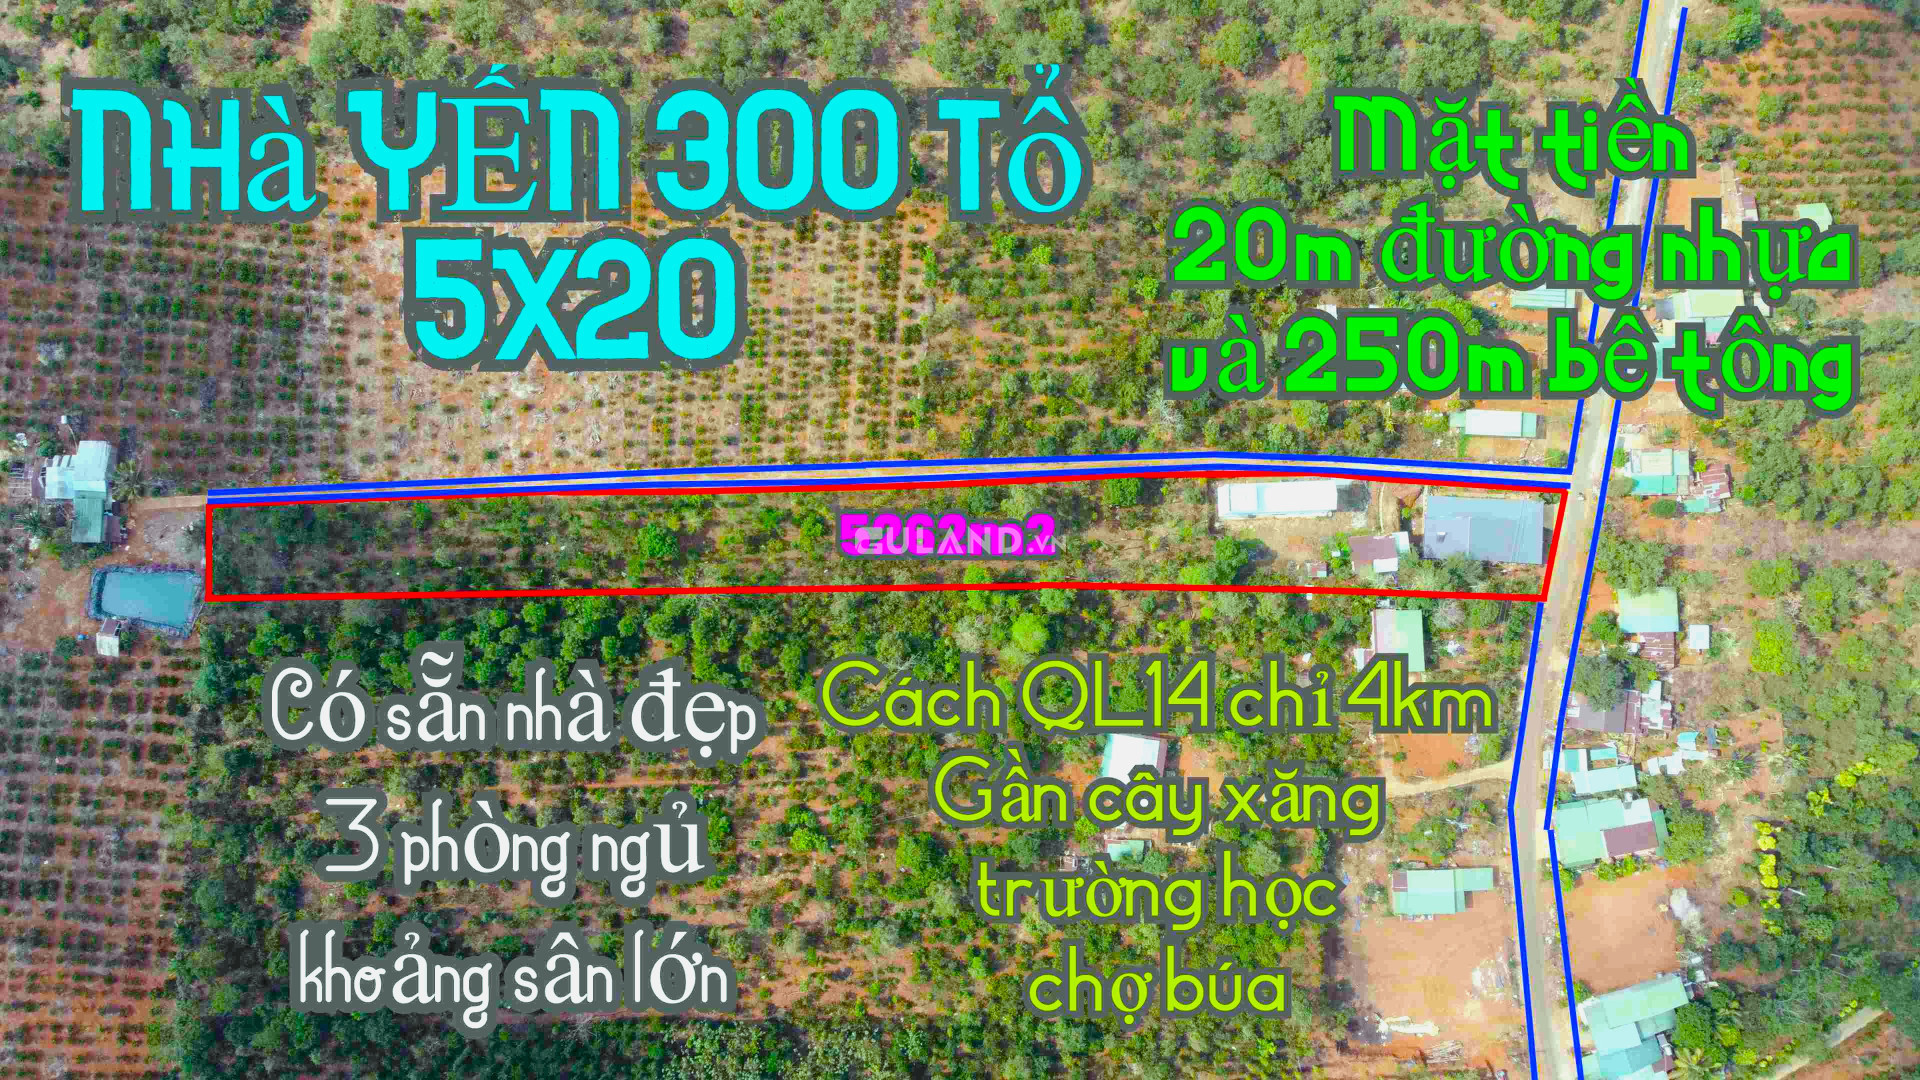 Bán nhà YẾN và nhà ở + 5262m2 gần QL14 | Khu đông dân cư | Chủ đang ngộp tại tỉnh Đắk Nông